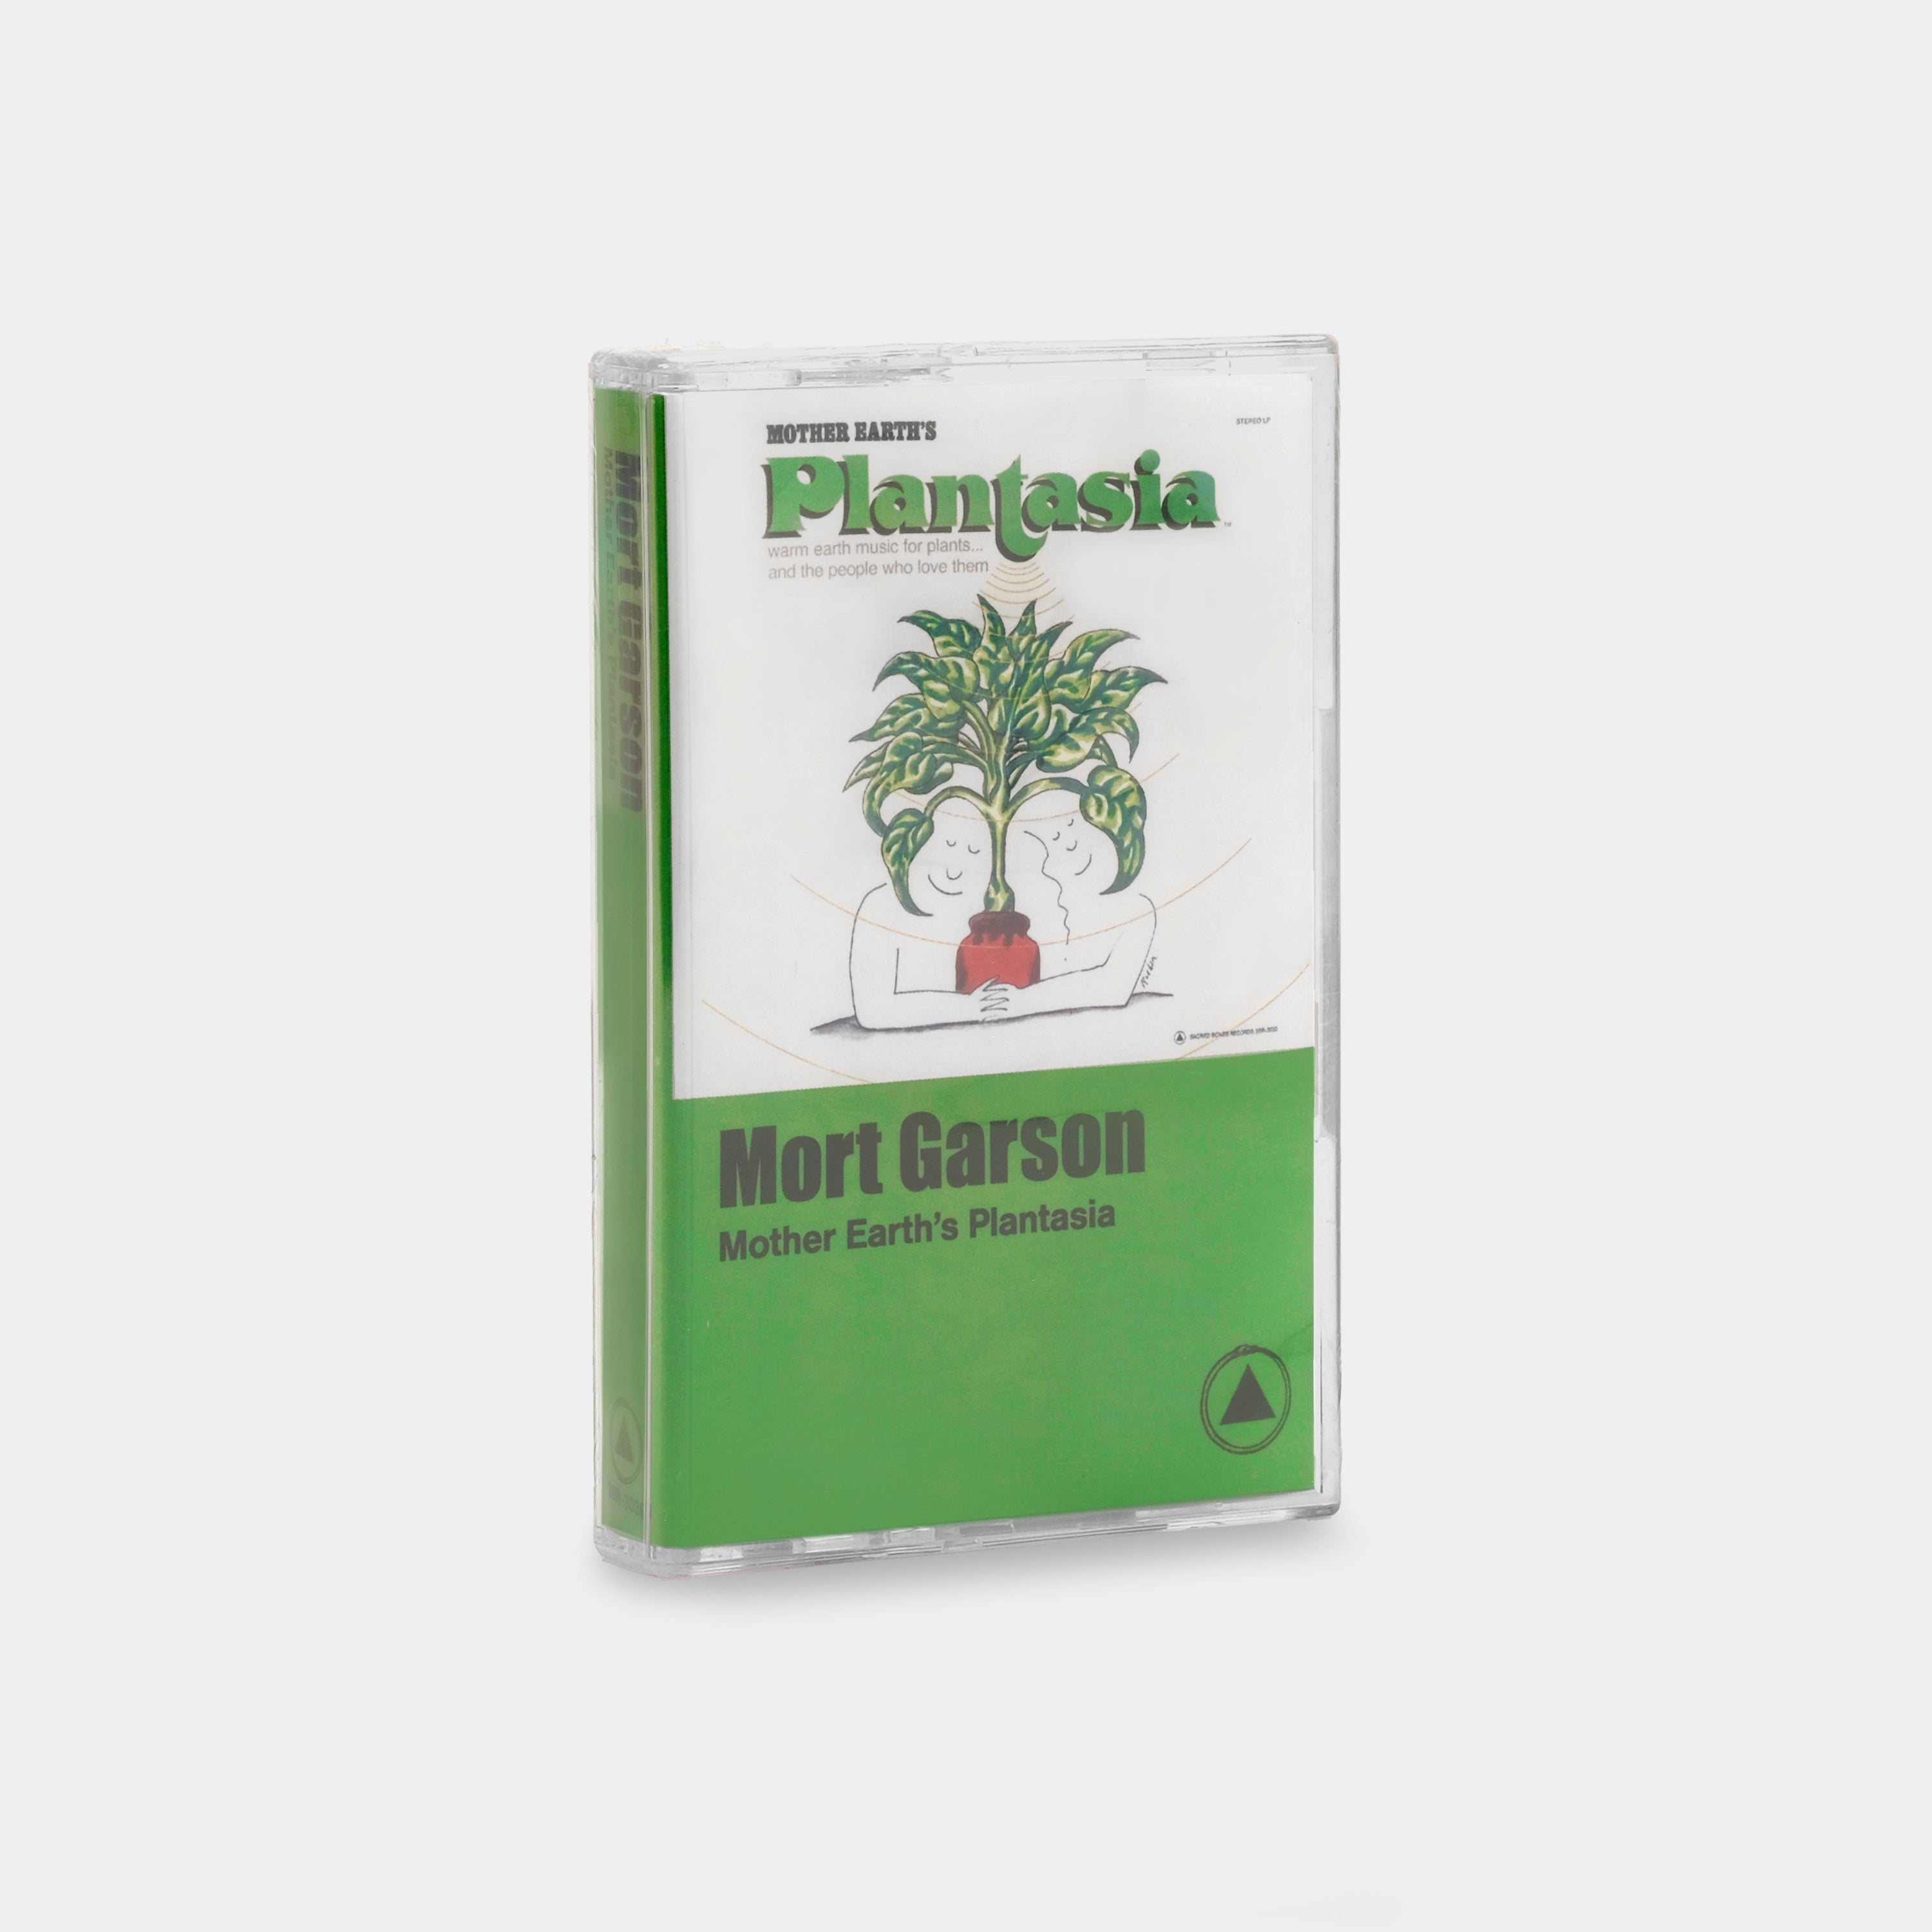 Mort Garson - Mother Earth's Plantasia Cassette Tape